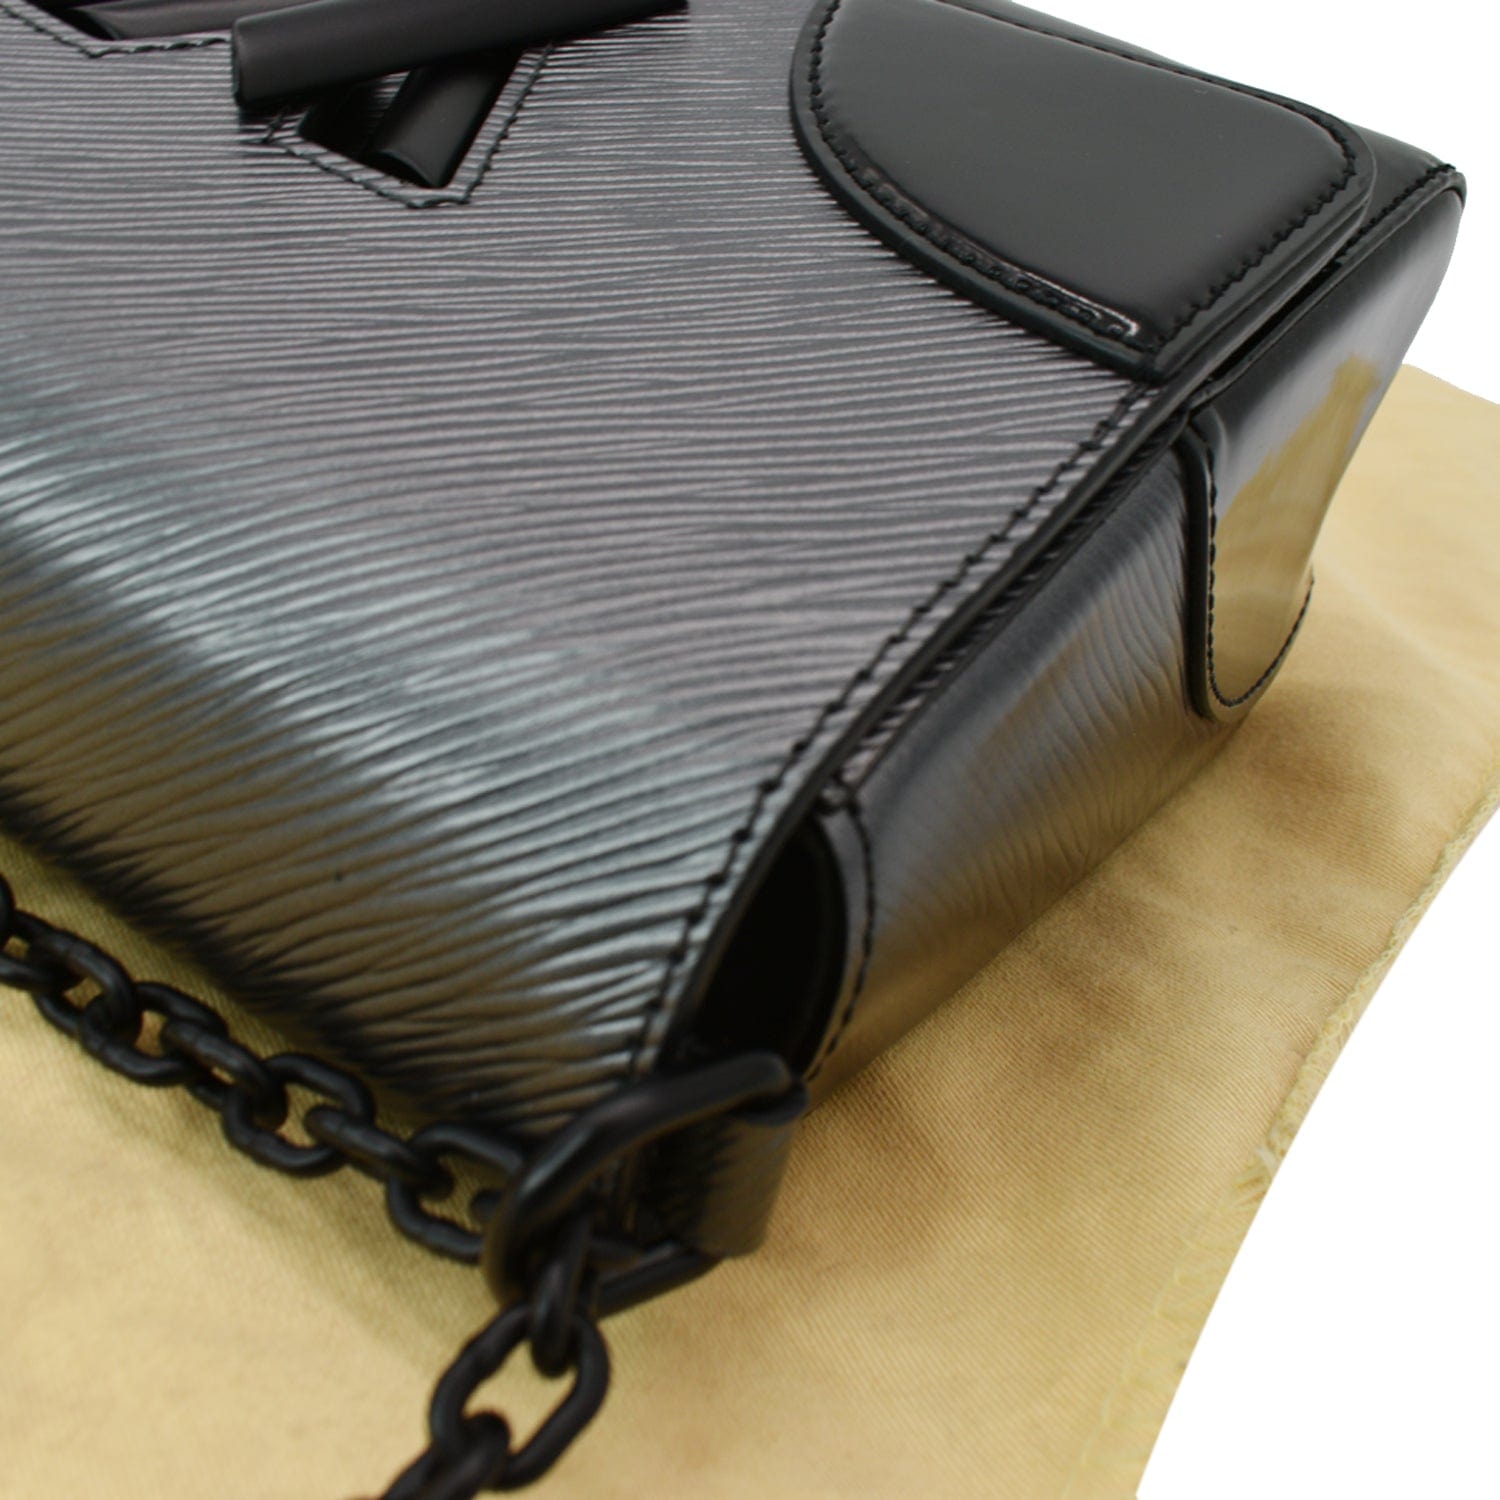 LOUIS VUITTON Twist Patent Shoulder bag in Black Patent leather Louis  Vuitton